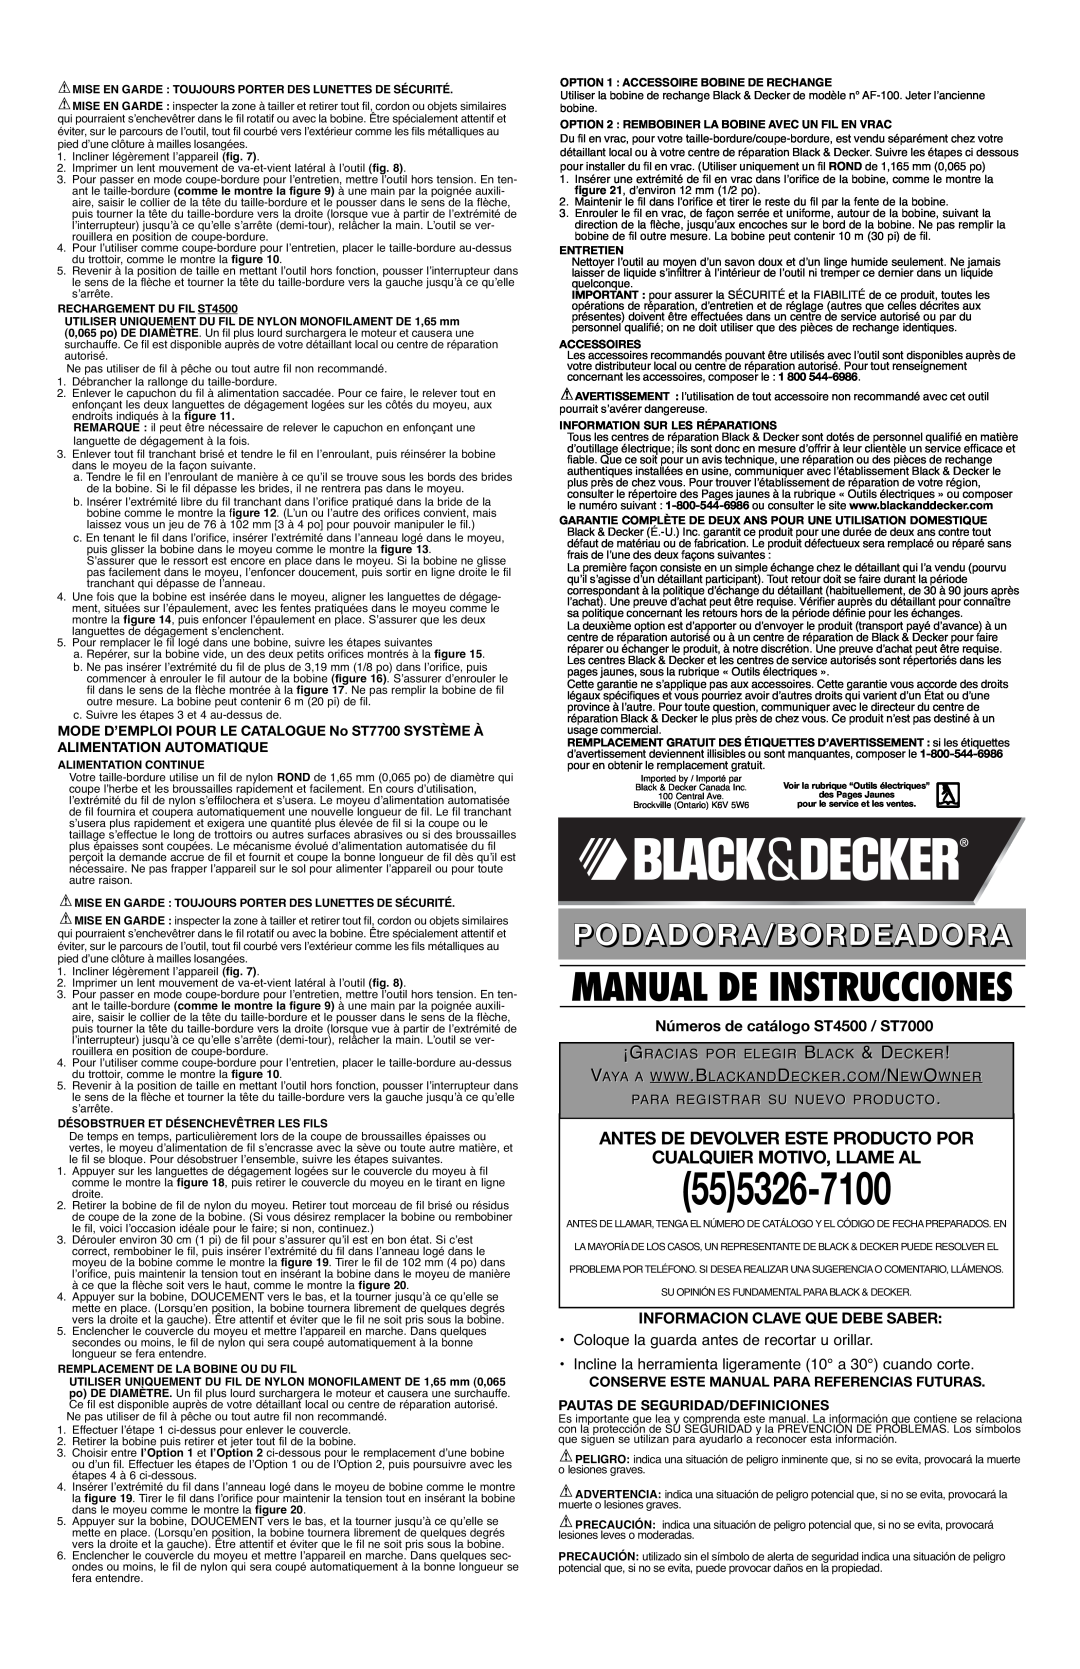 Black & Decker 90508813 555326-7100, Antes De Devolver Este Producto Por, Cualquier Motivo, Llame Al, Podadora/Bordeadora 